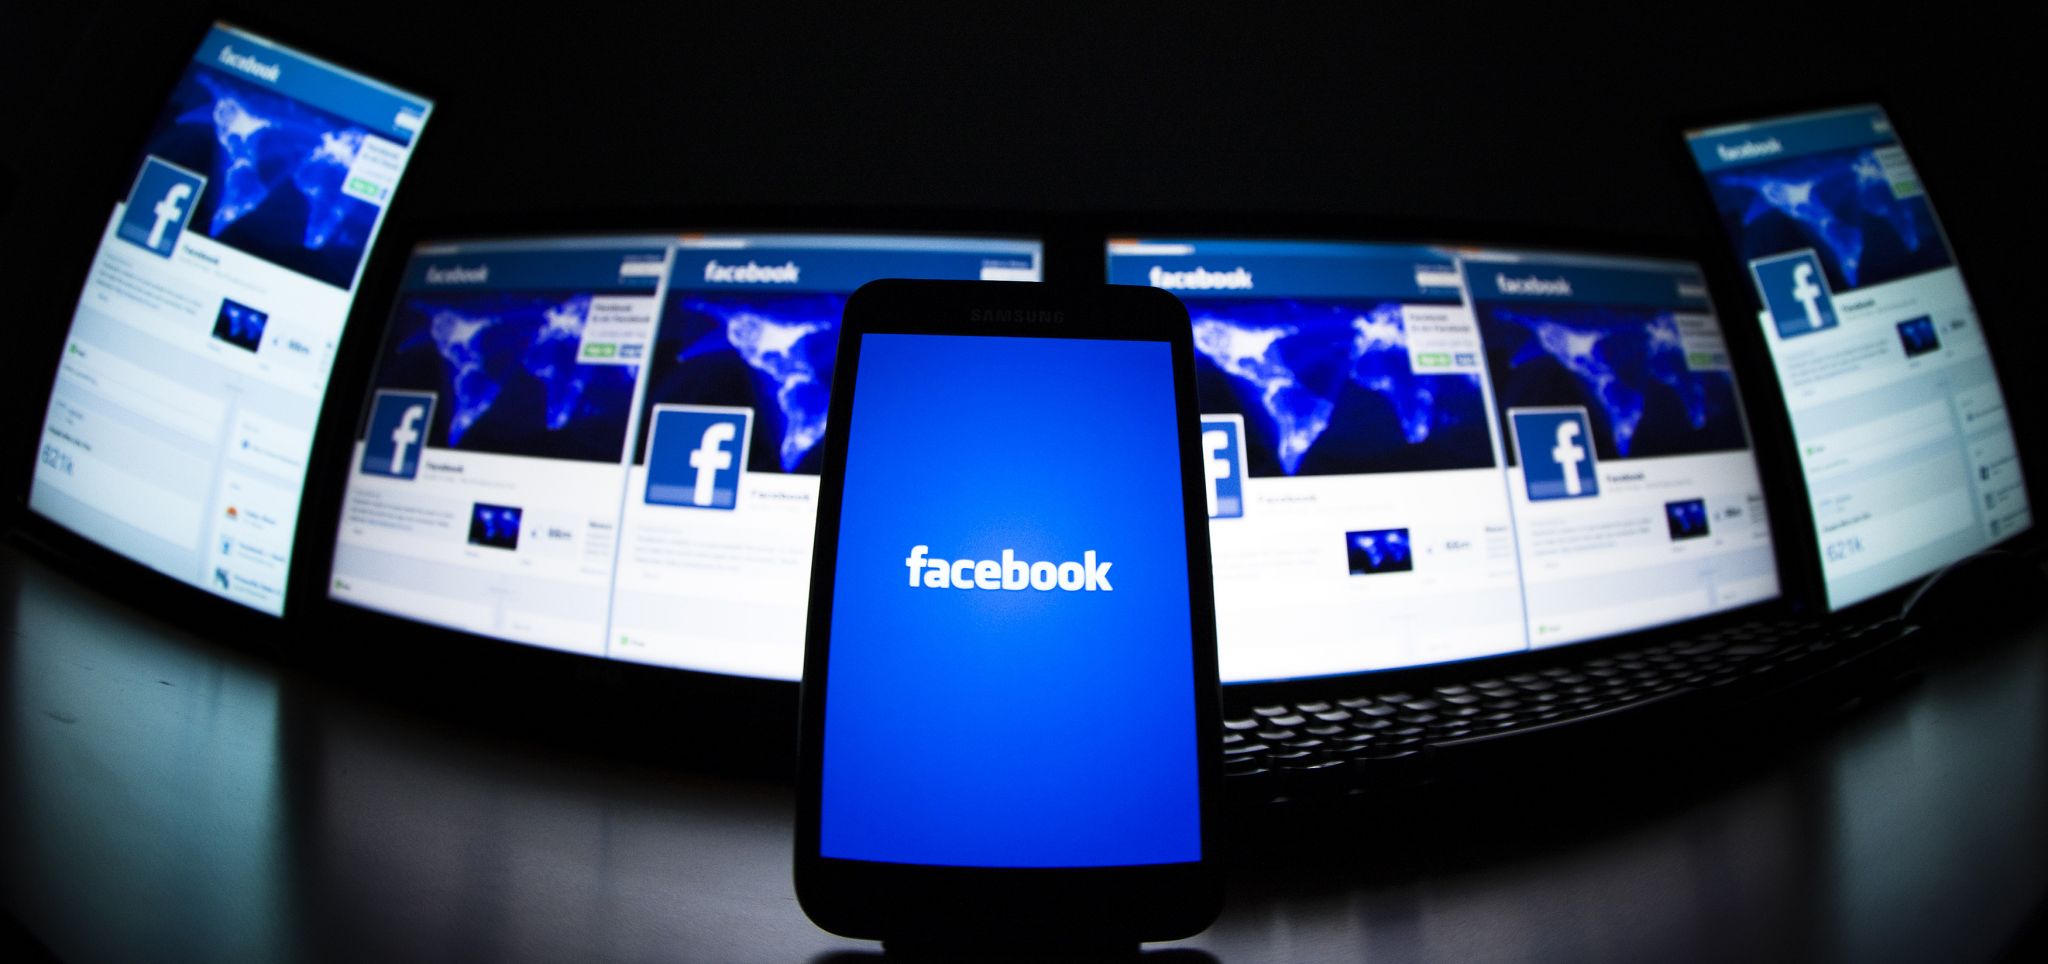 Facebook lancia la ‘Pagella Politica’ e la Fondazione contro le Fake news